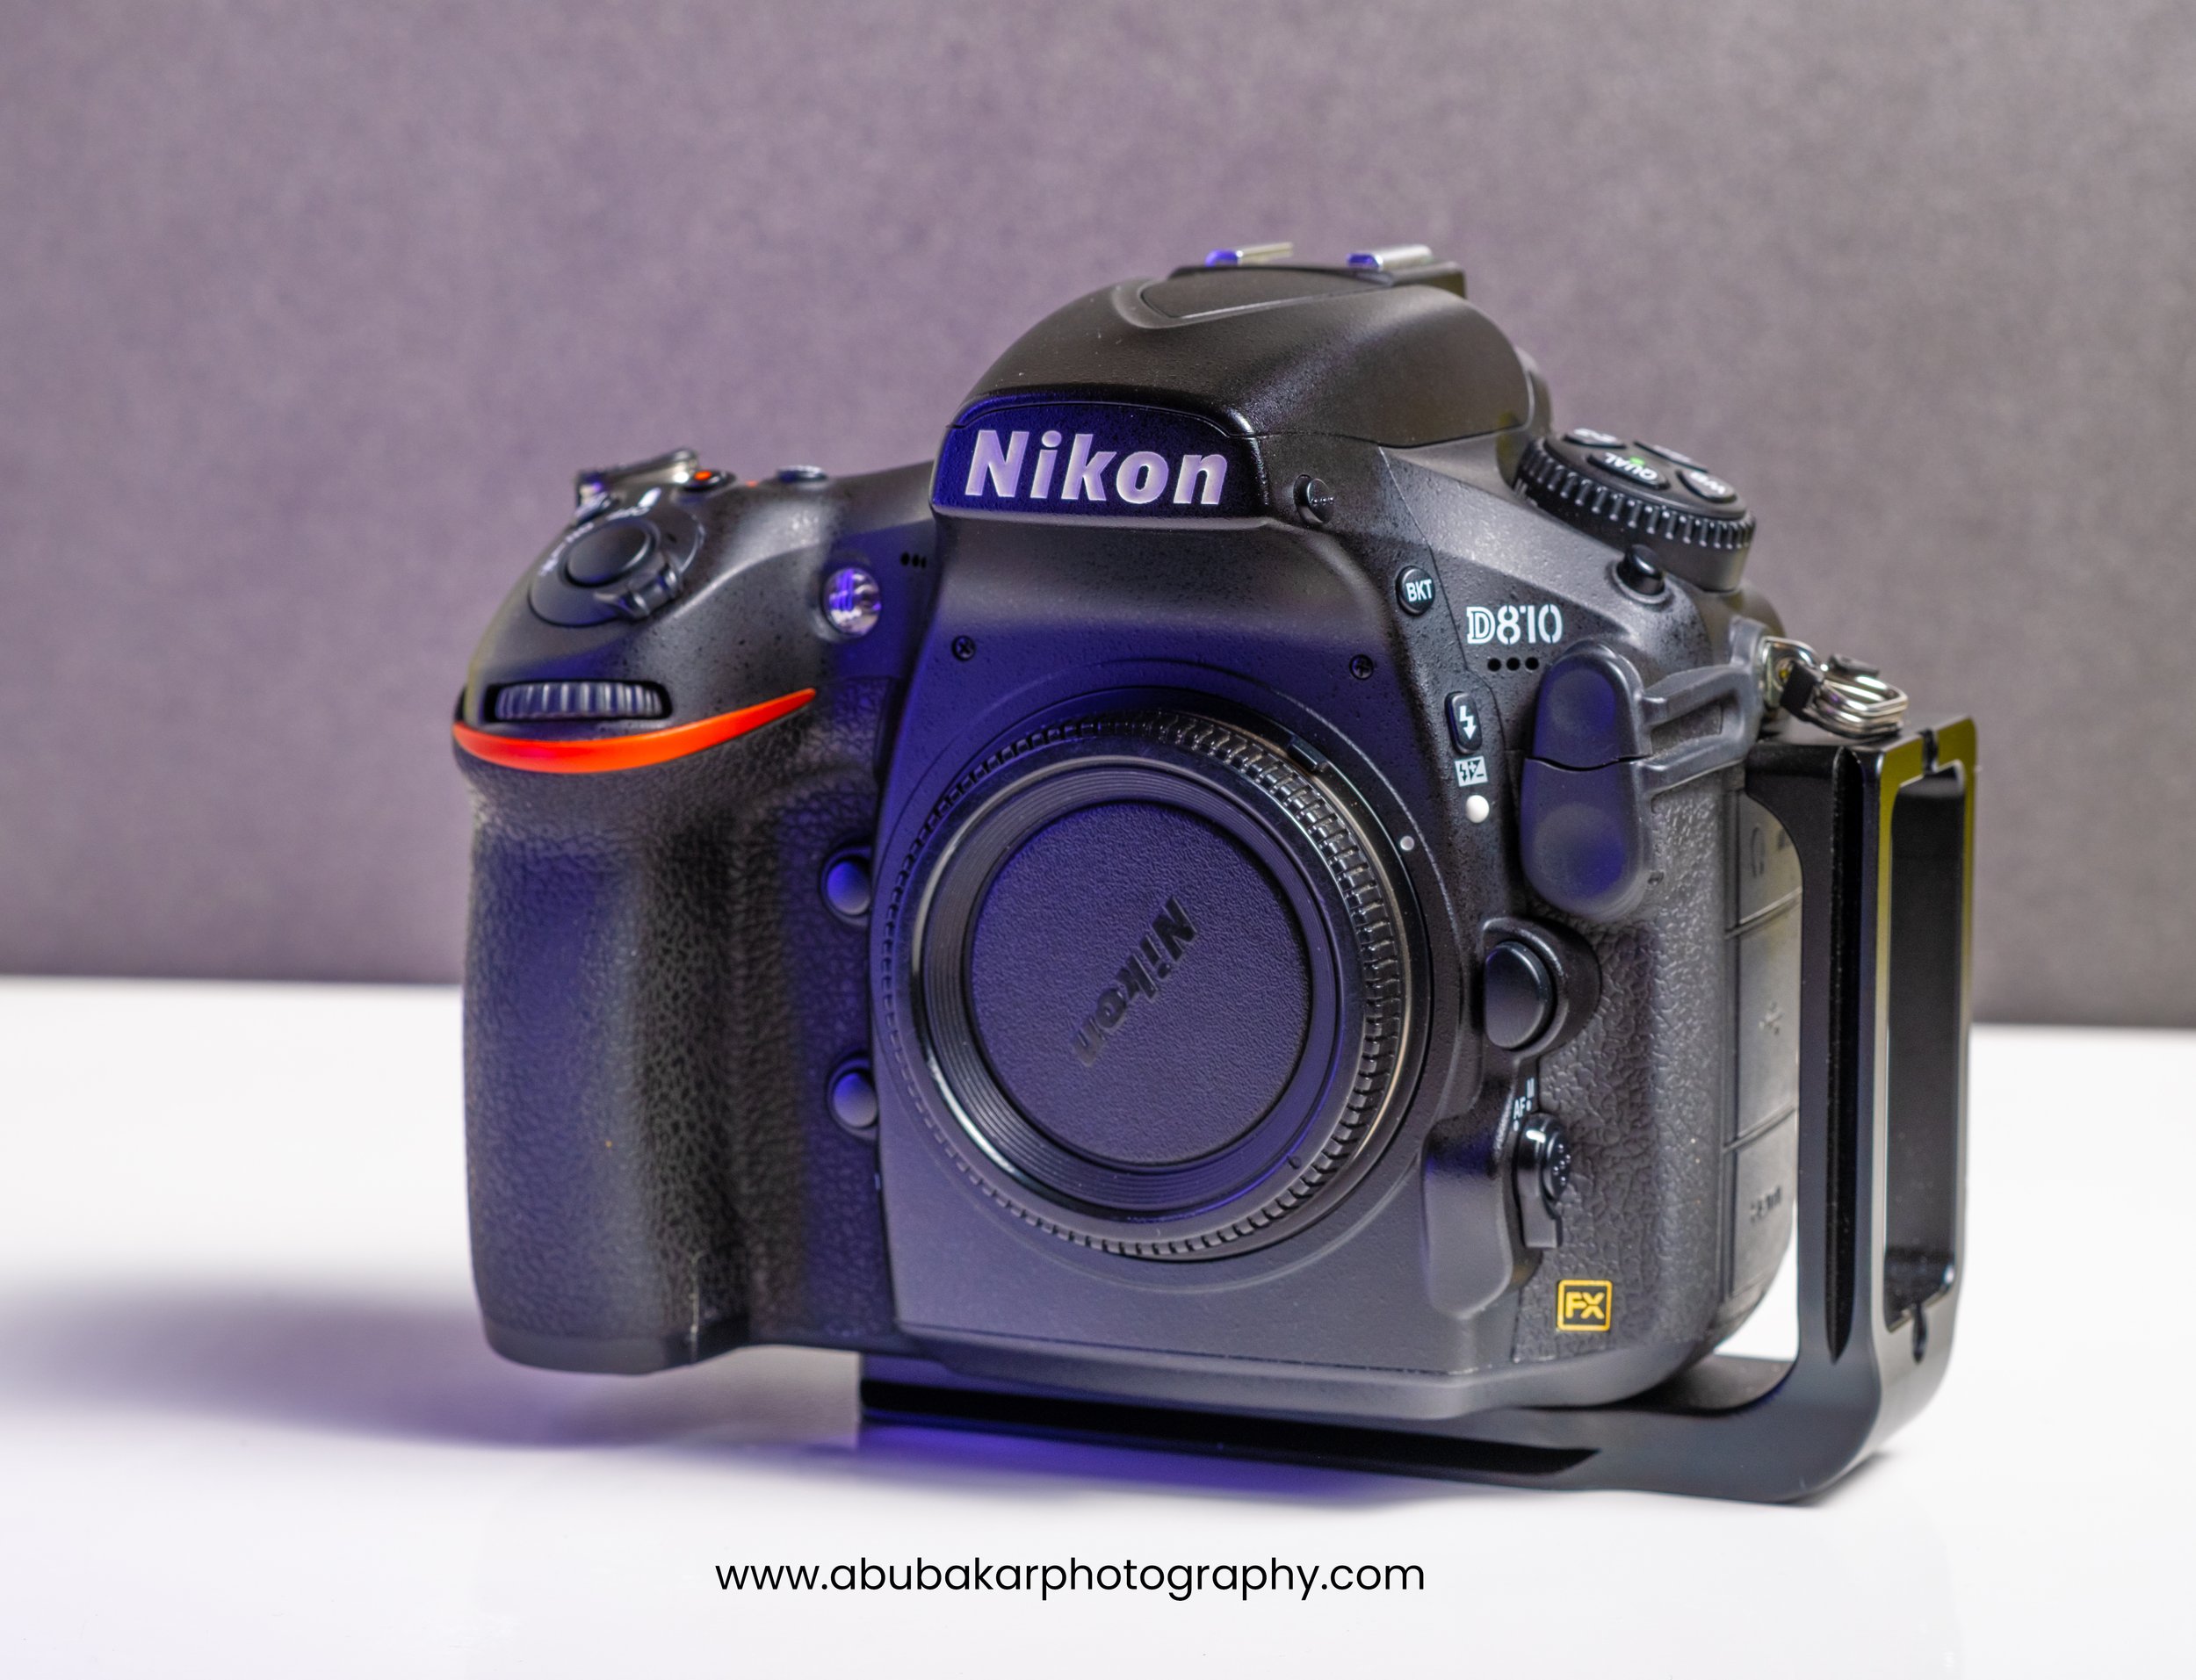 Nikon D810 - Full Review 